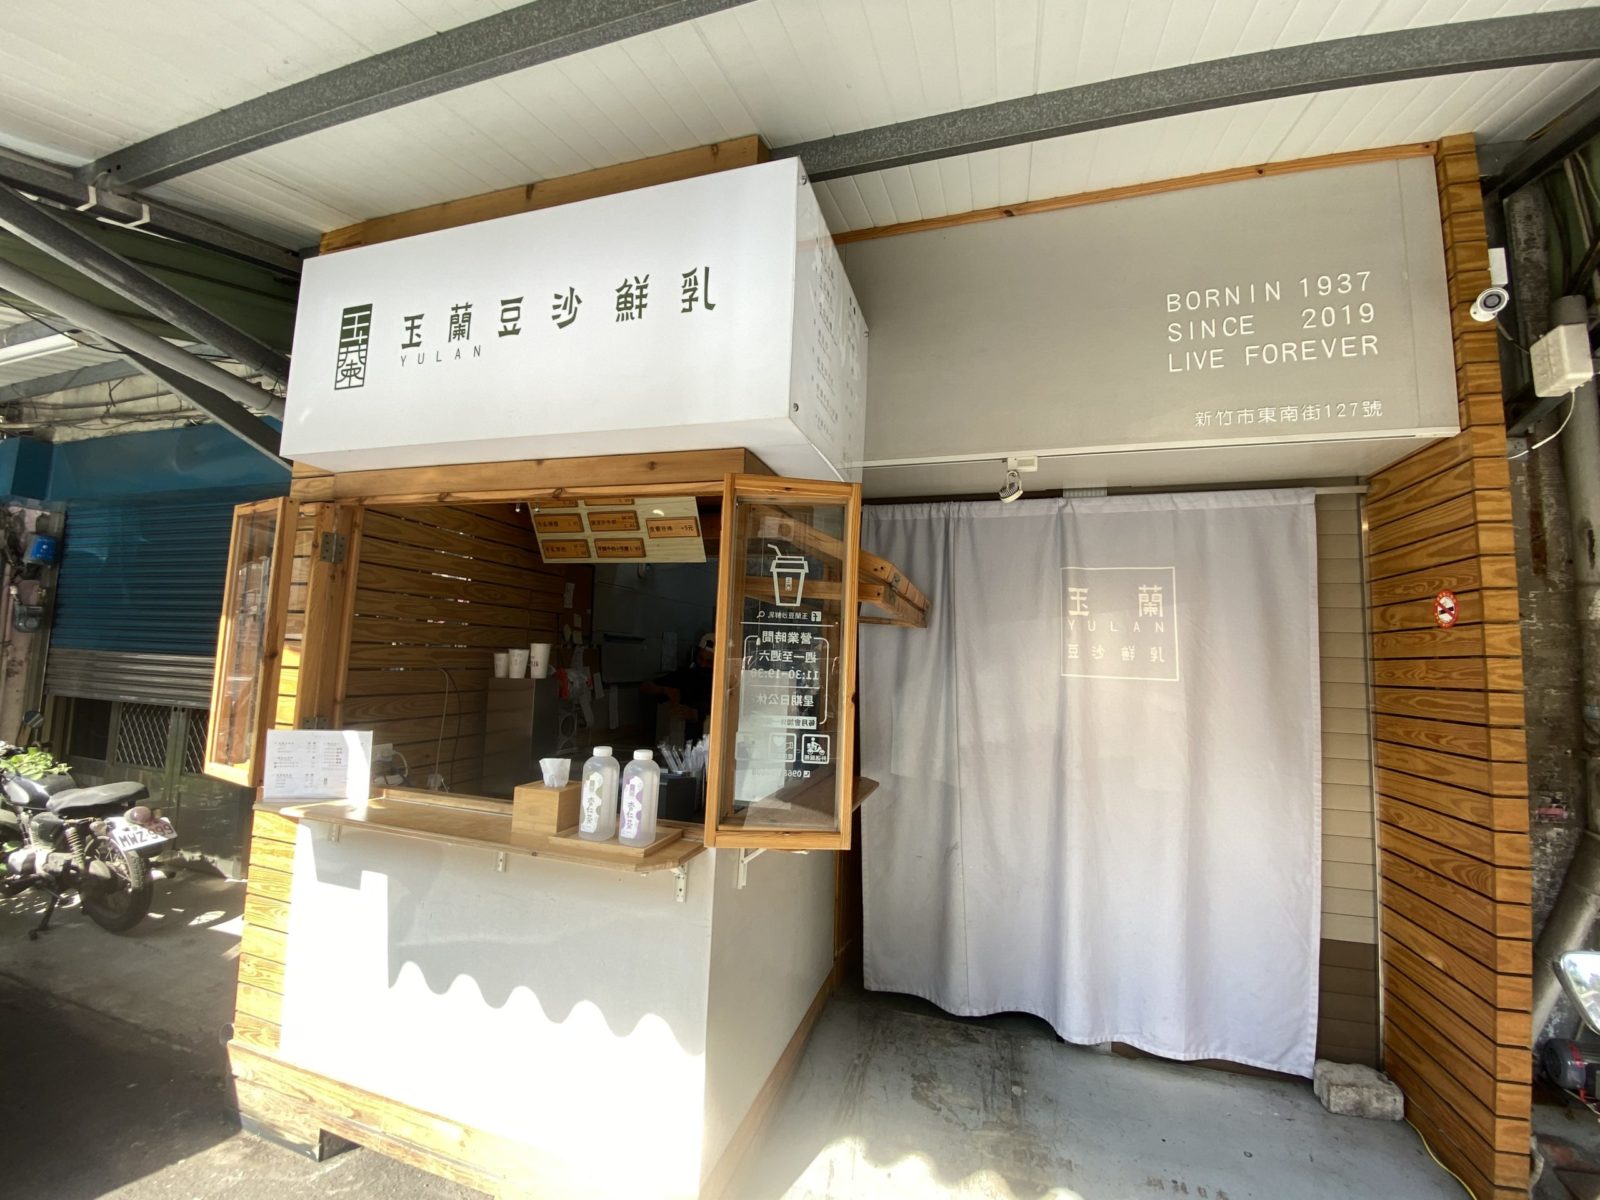  【玉蘭豆沙鮮乳】新竹豆沙鮮乳專賣 隱身東南街的濃郁系豆沙鮮乳